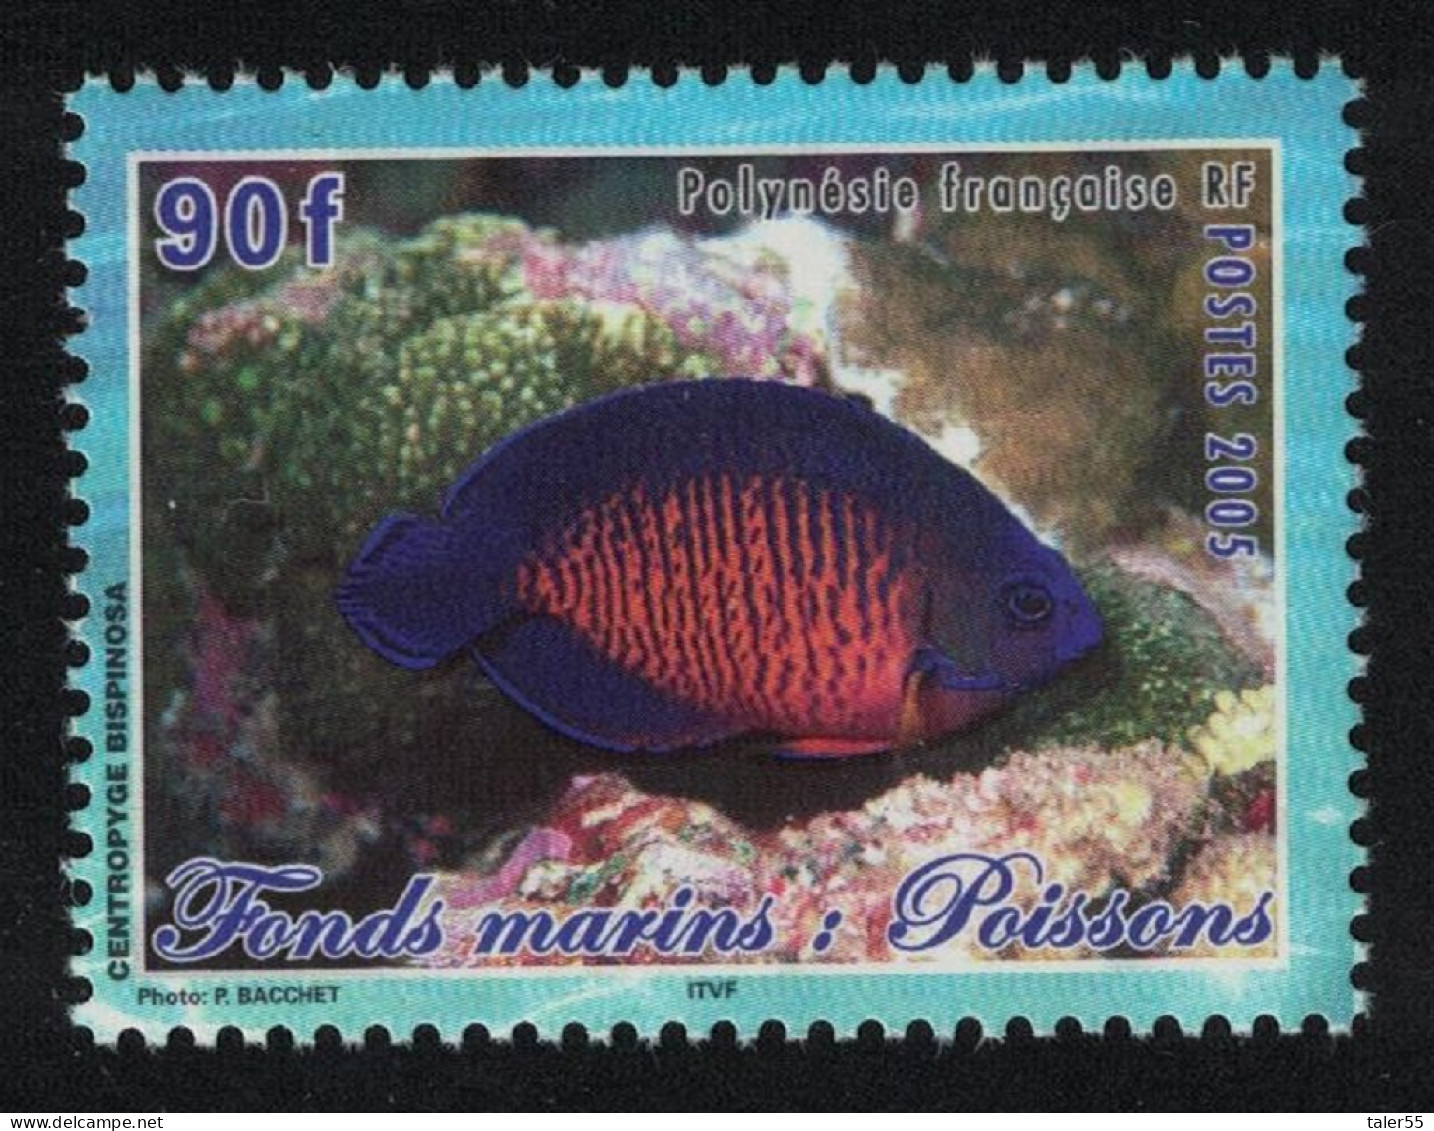 Fr. Polynesia Fish Centropyde Bispinosa 90f 2005 MNH SG#999 MI#944 - Neufs